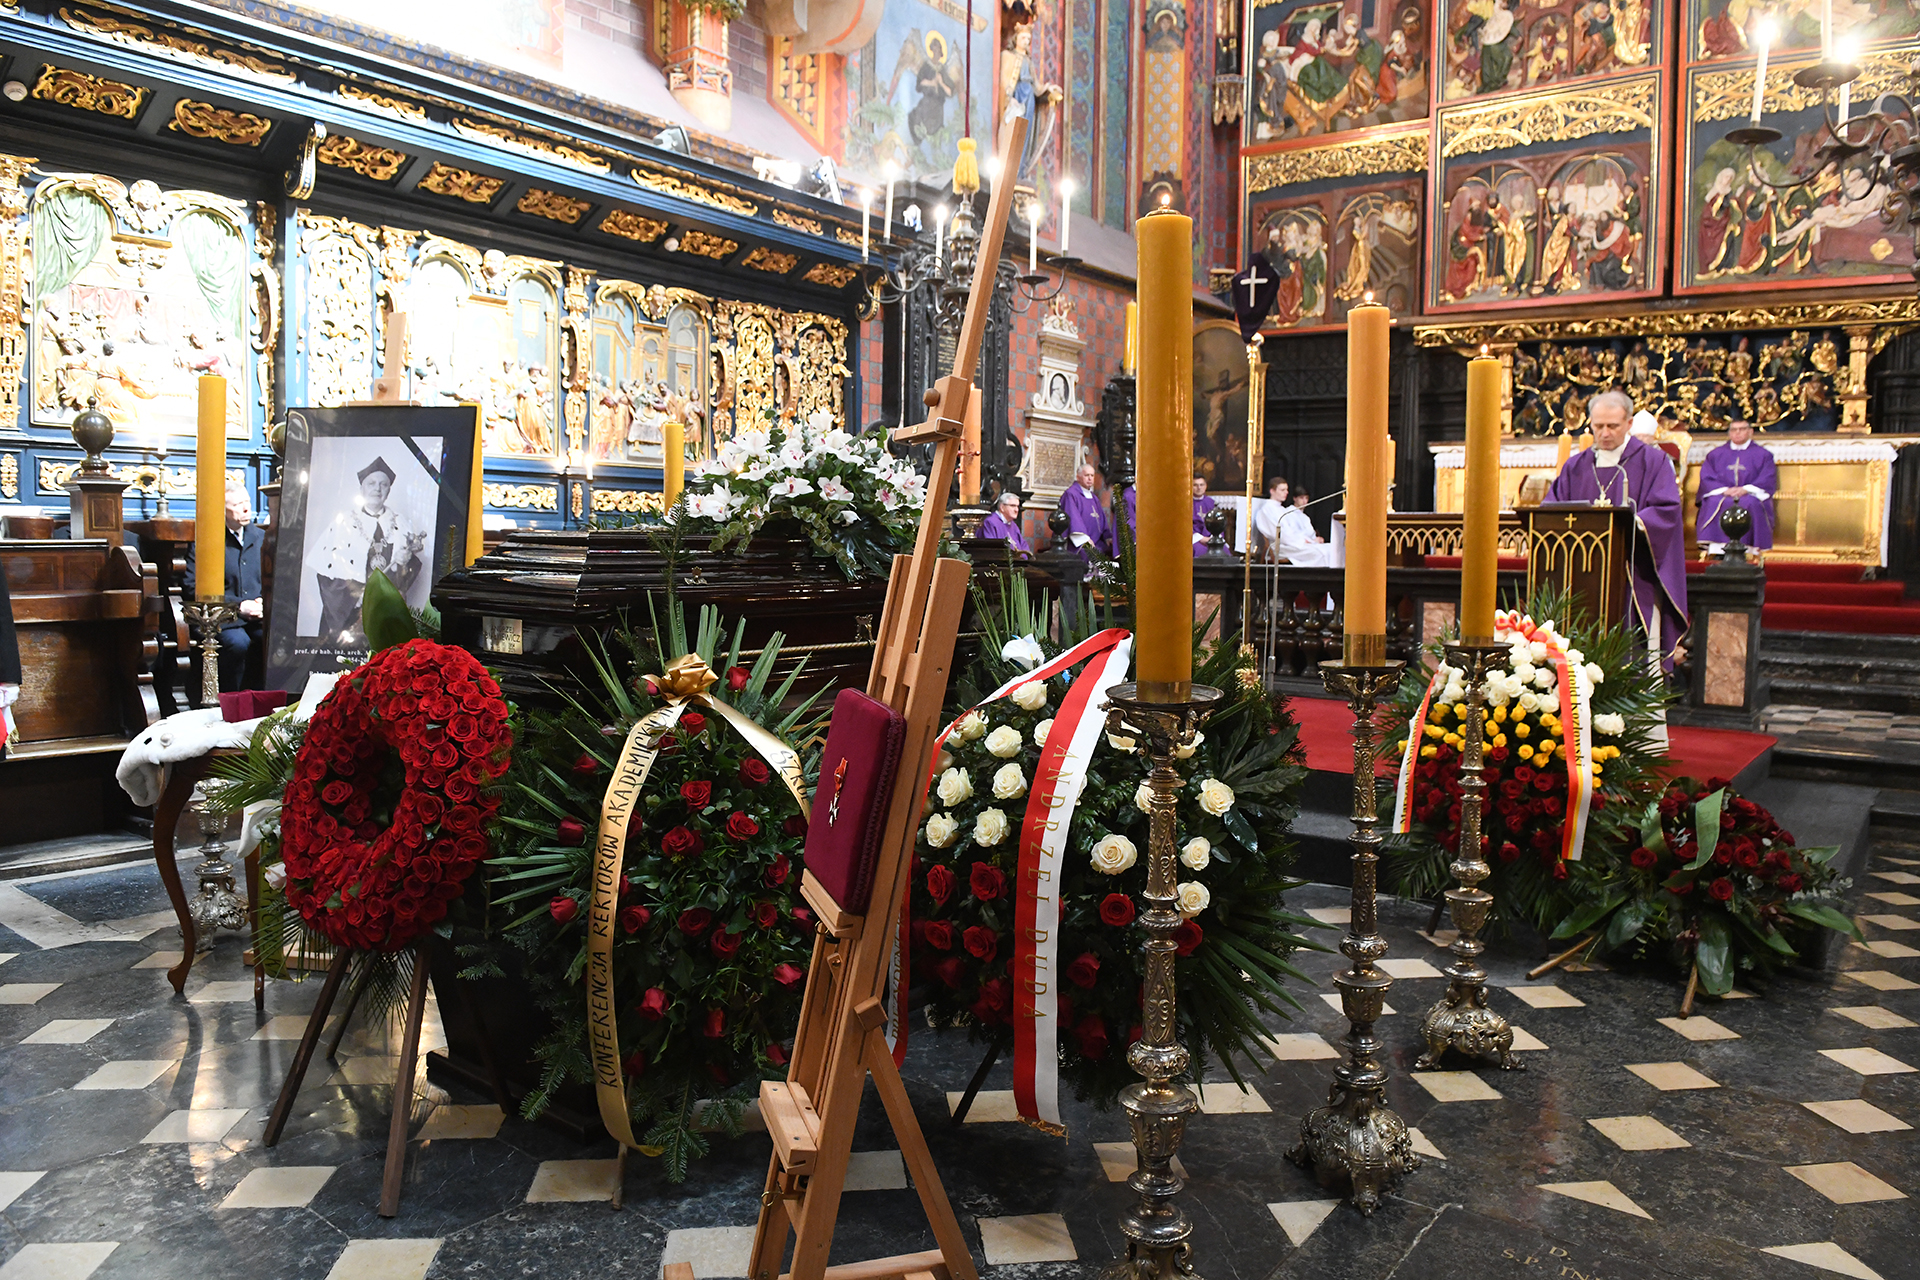 trumna ś.p. rektora Andrzeja Białkiewicza przed ołtarzem mariackim, obok portret i wieńce kwiatów, pry ołtarzu księża